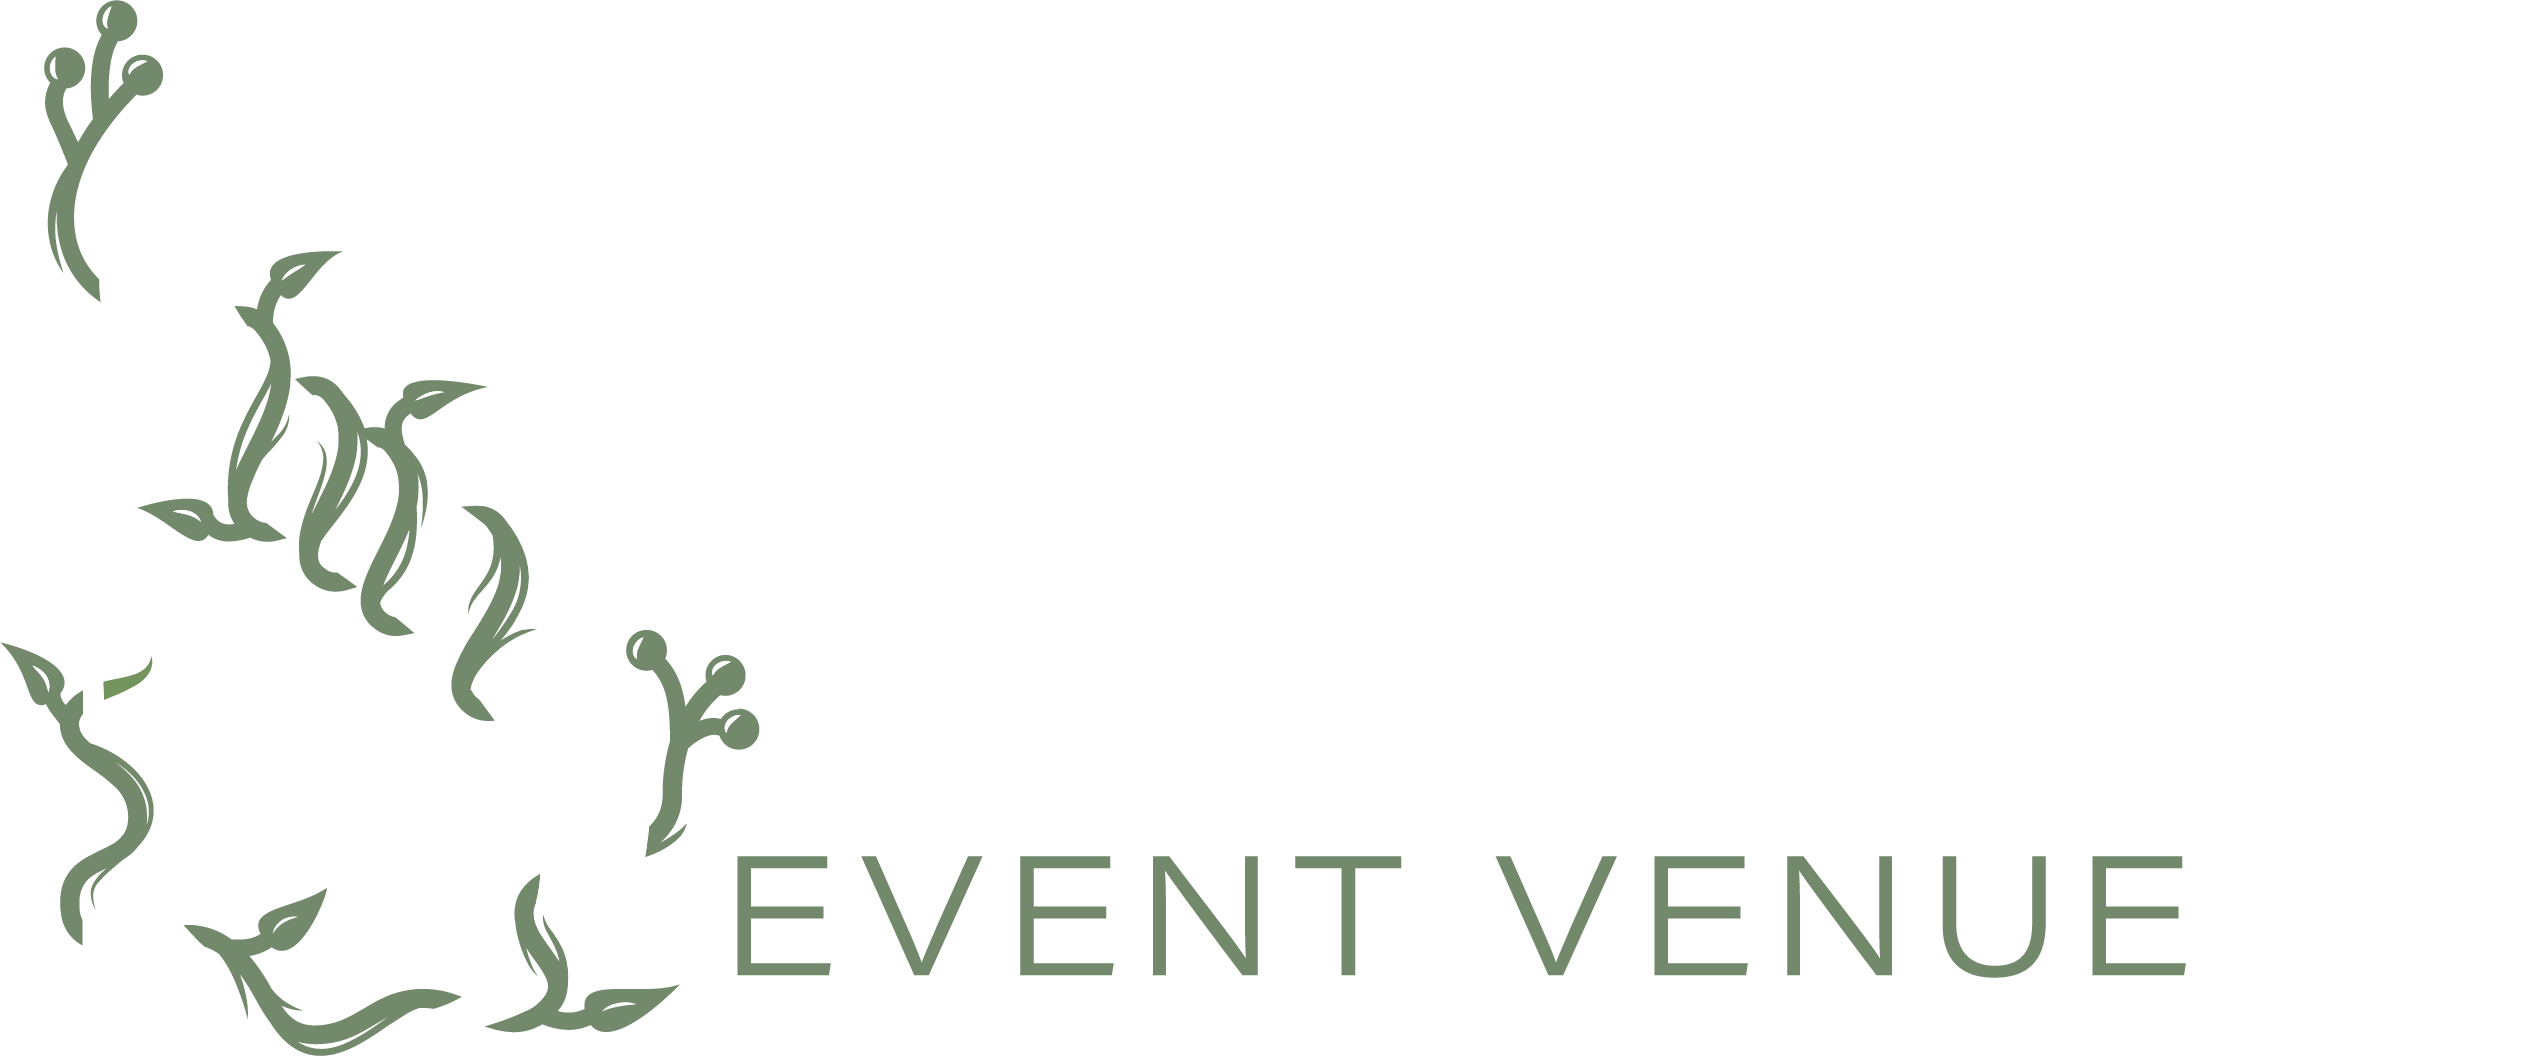 Sterling Event Venue Logo White